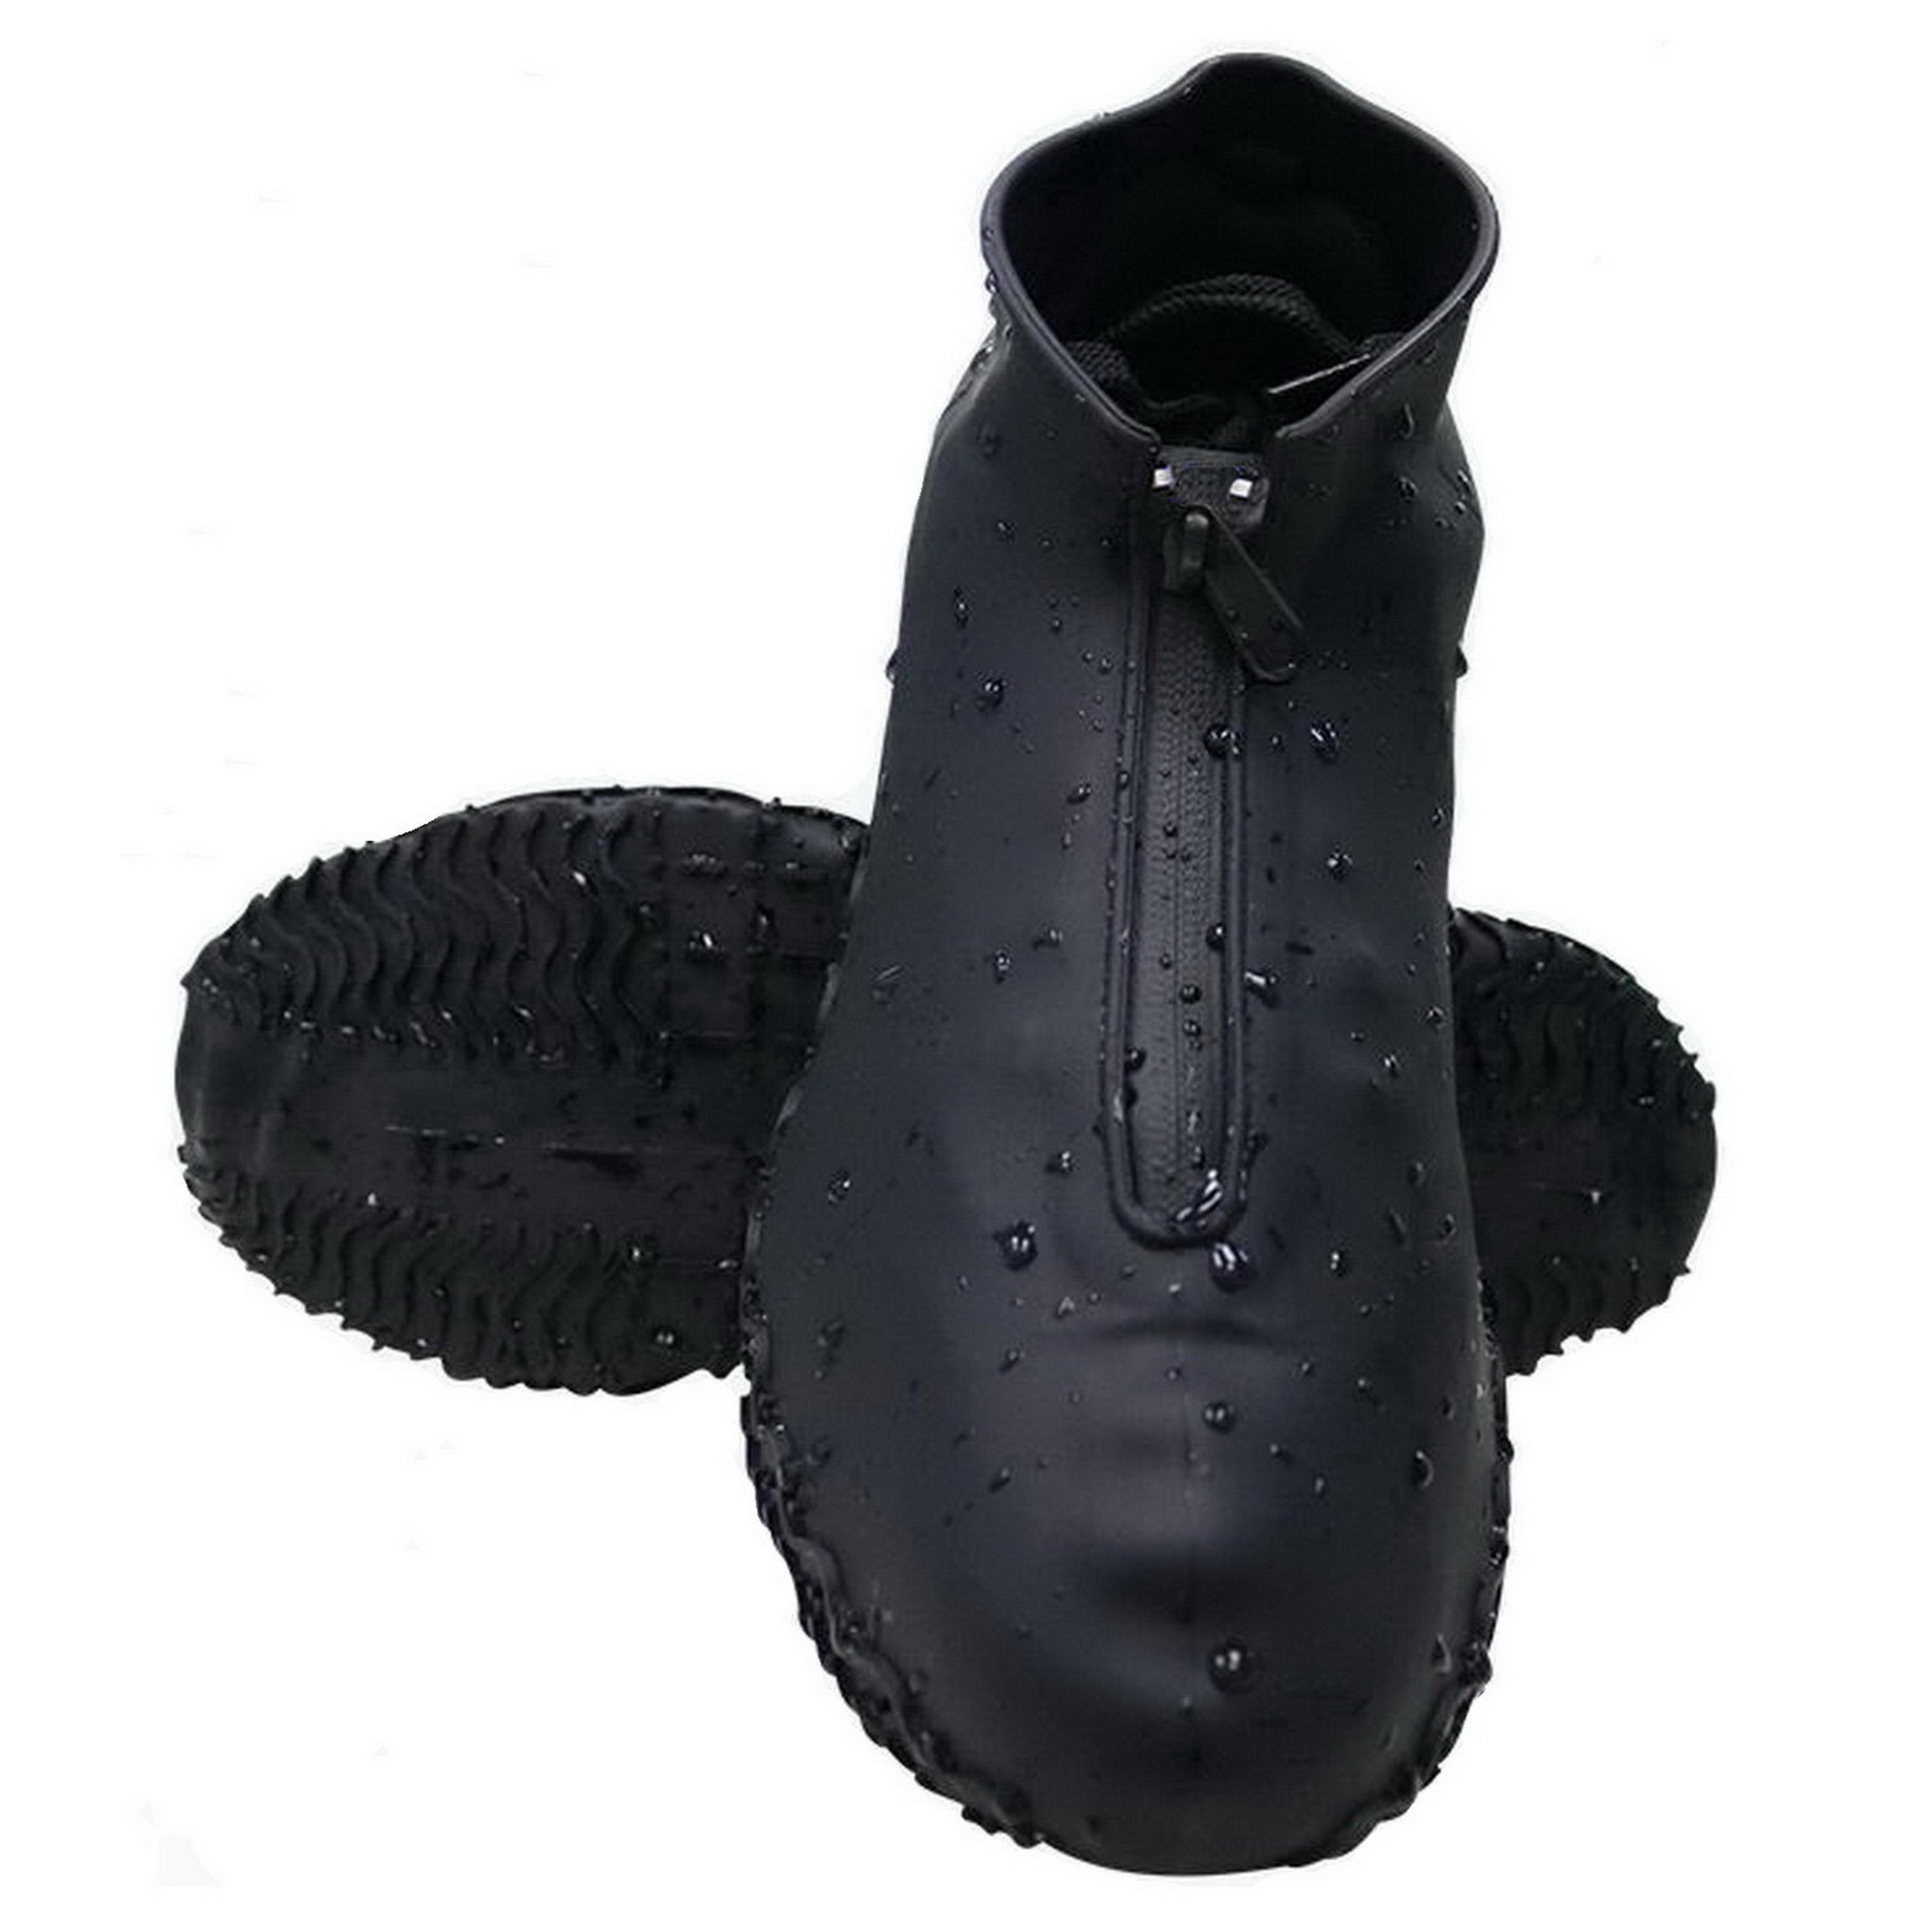 Cиликоновые чехлы-бахилы для обуви с молнией M 38-41 CG WSS2 Black